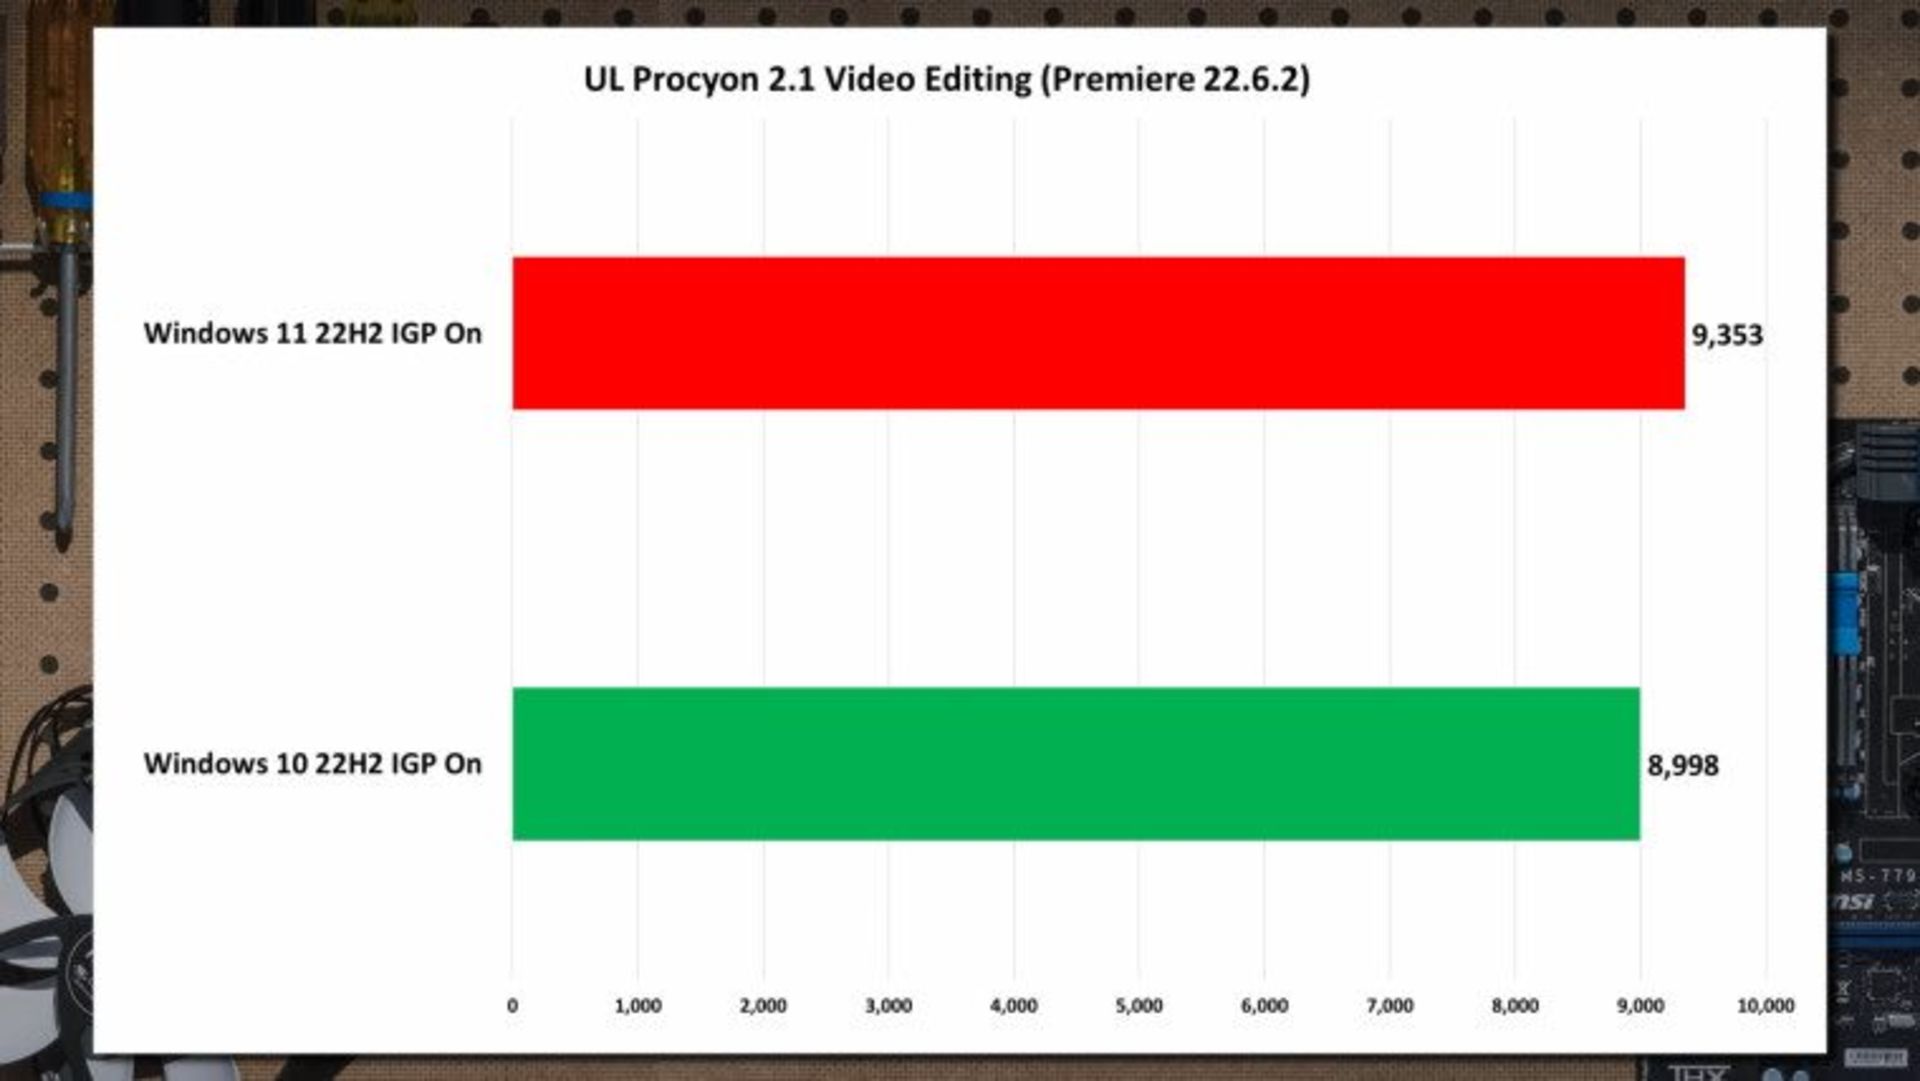 عملکرد ویندوز ۱۱ و ۱۰ در معیار procyon در ویرایش ویدیو